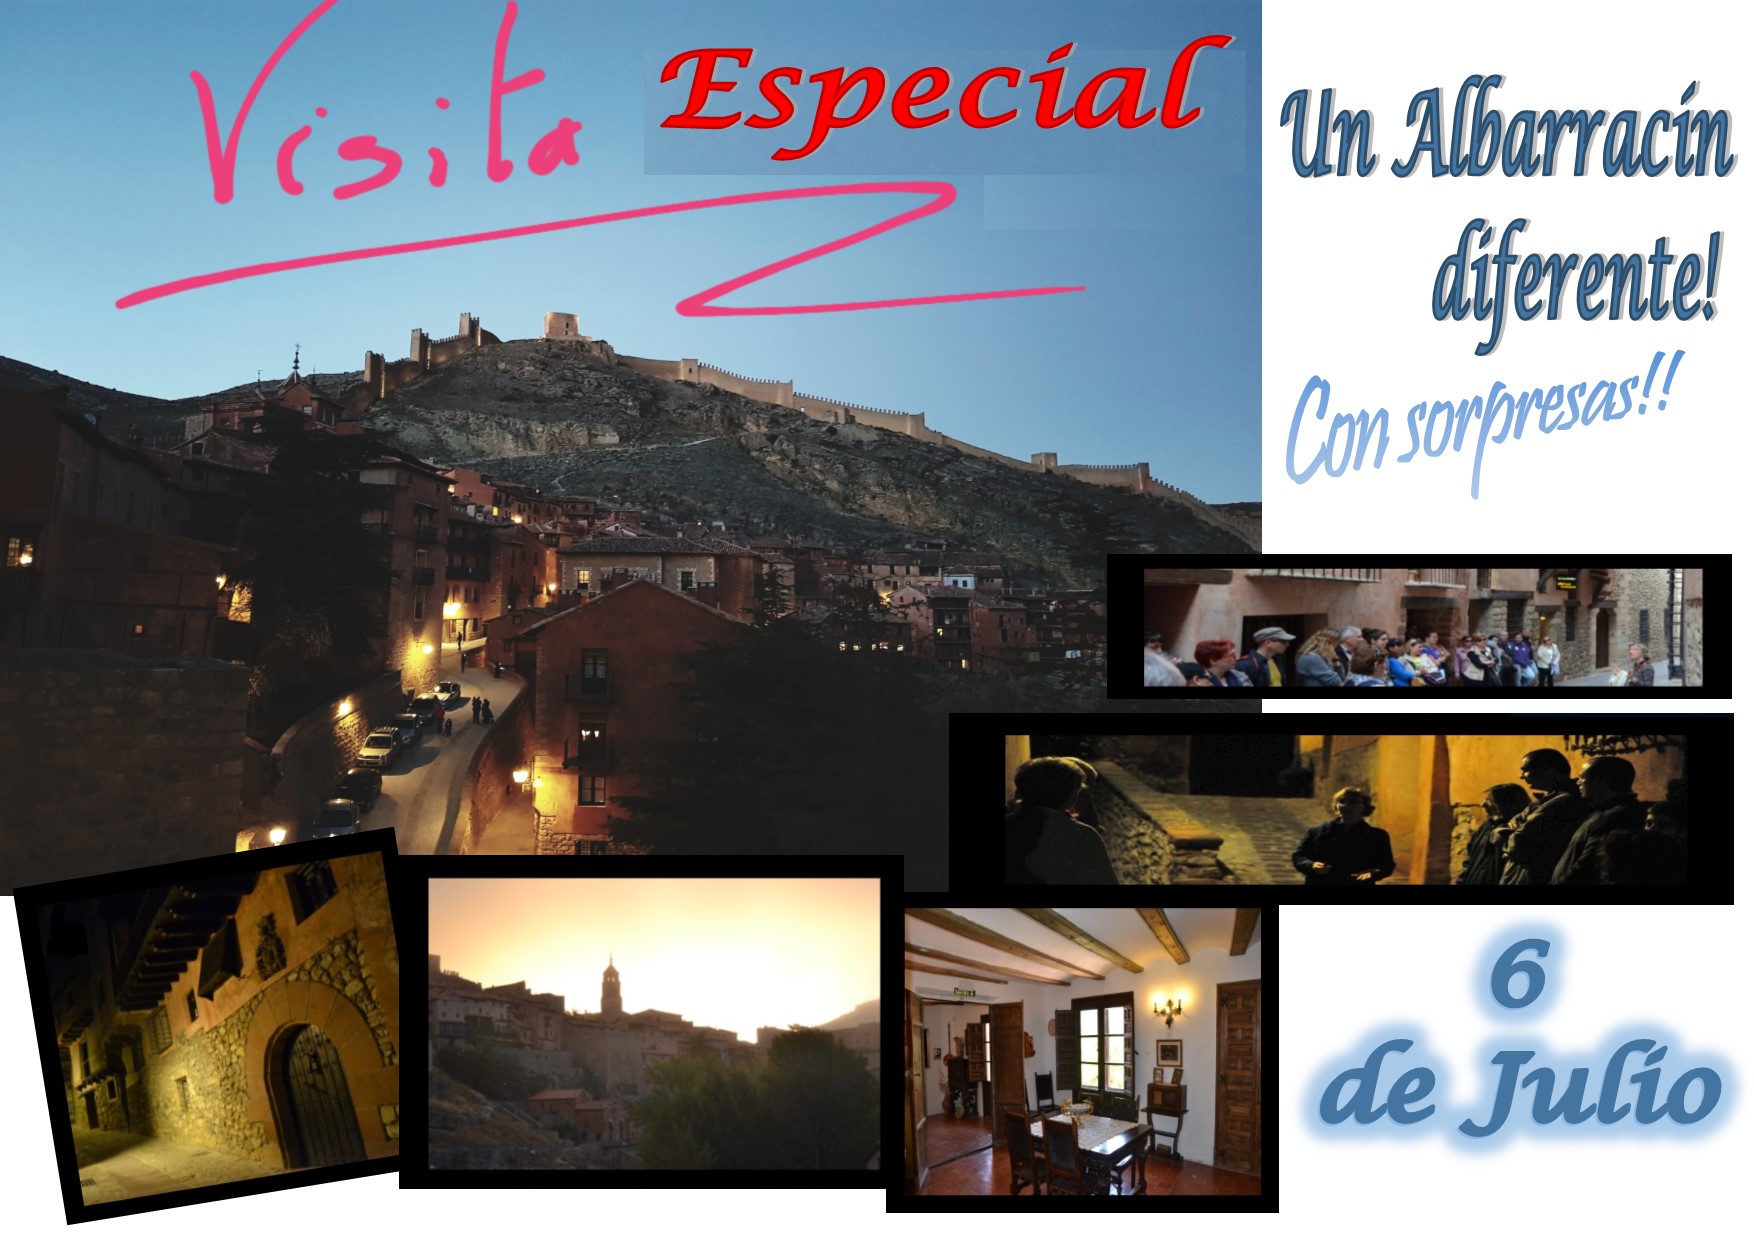 Este Sábado 6 de Julio….Albarracín Especial!! Con sorpresas!!